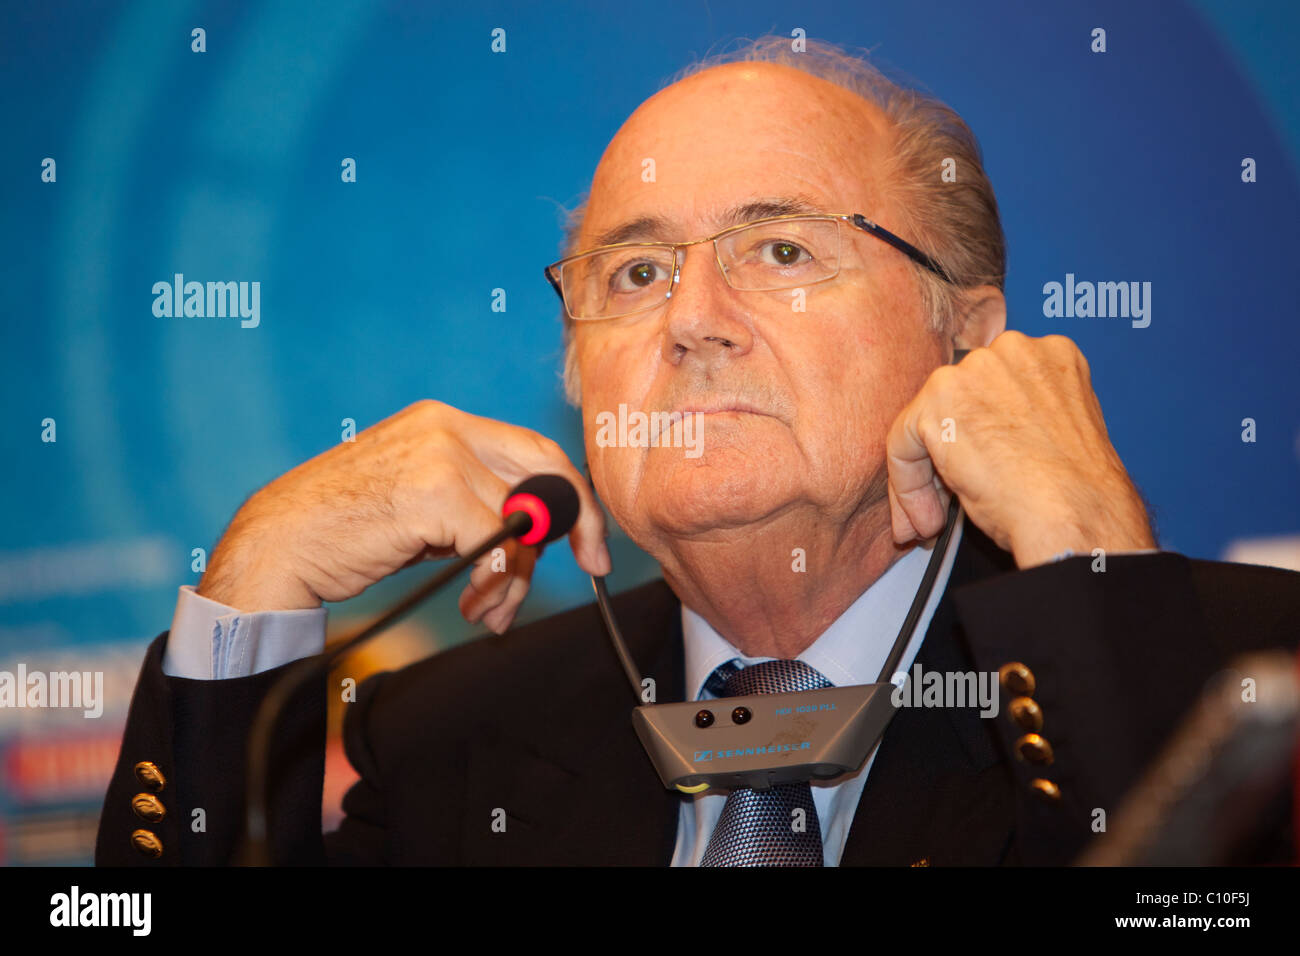 El Presidente de la FIFA, Sepp Blatter, escucha a una pregunta en una conferencia de prensa antes de la U-20 2009 Campeonato Mundial de Fútbol. Foto de stock